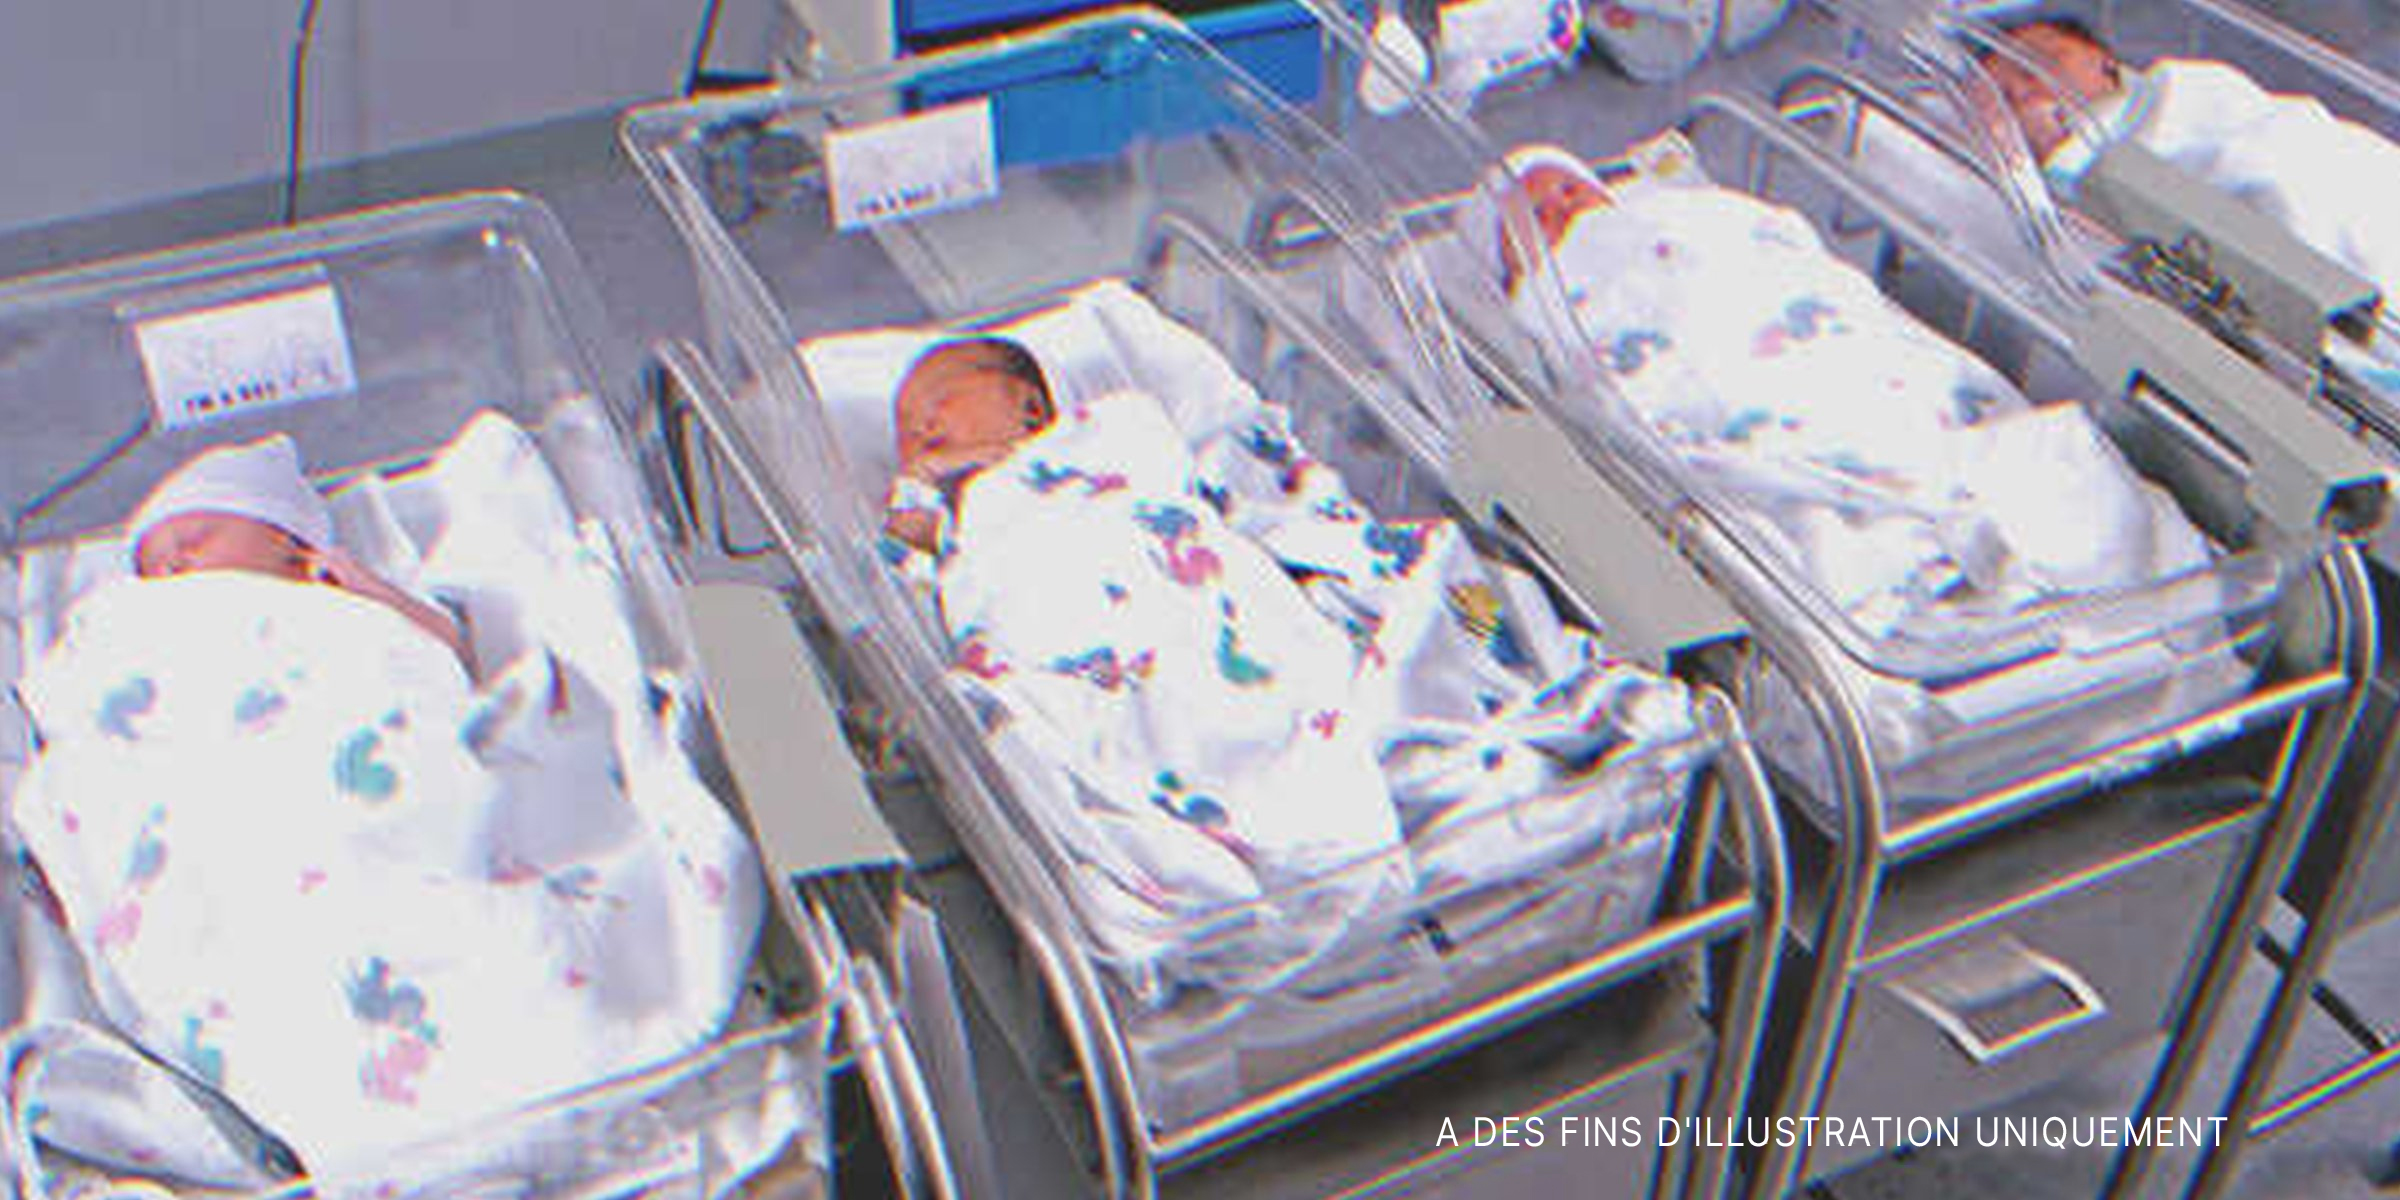 Bébés dans un hôpital | Source : Getty Images